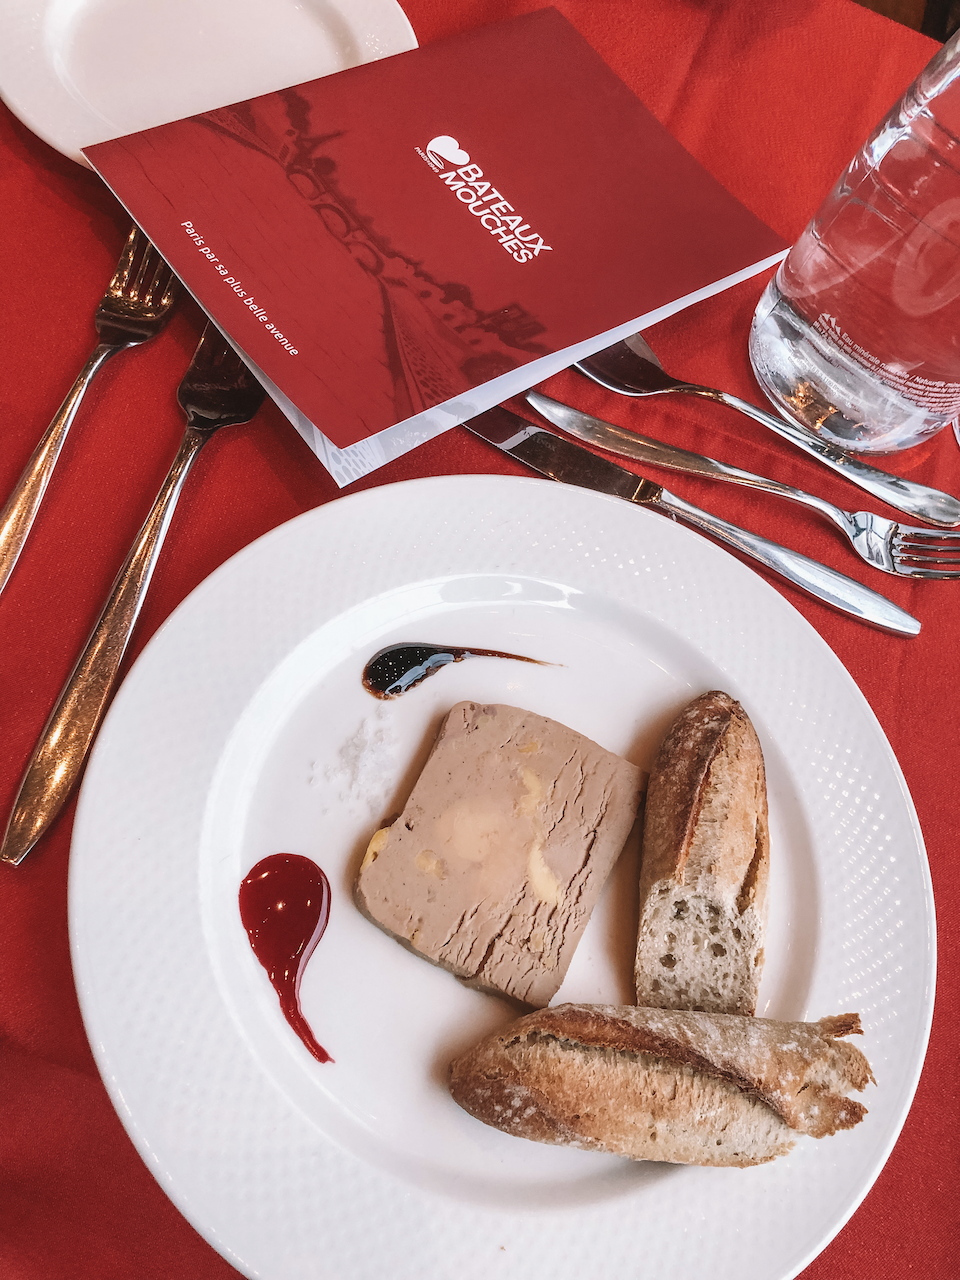 Foie gras en entrée avec les Bateaux-Mouches - Paris - France